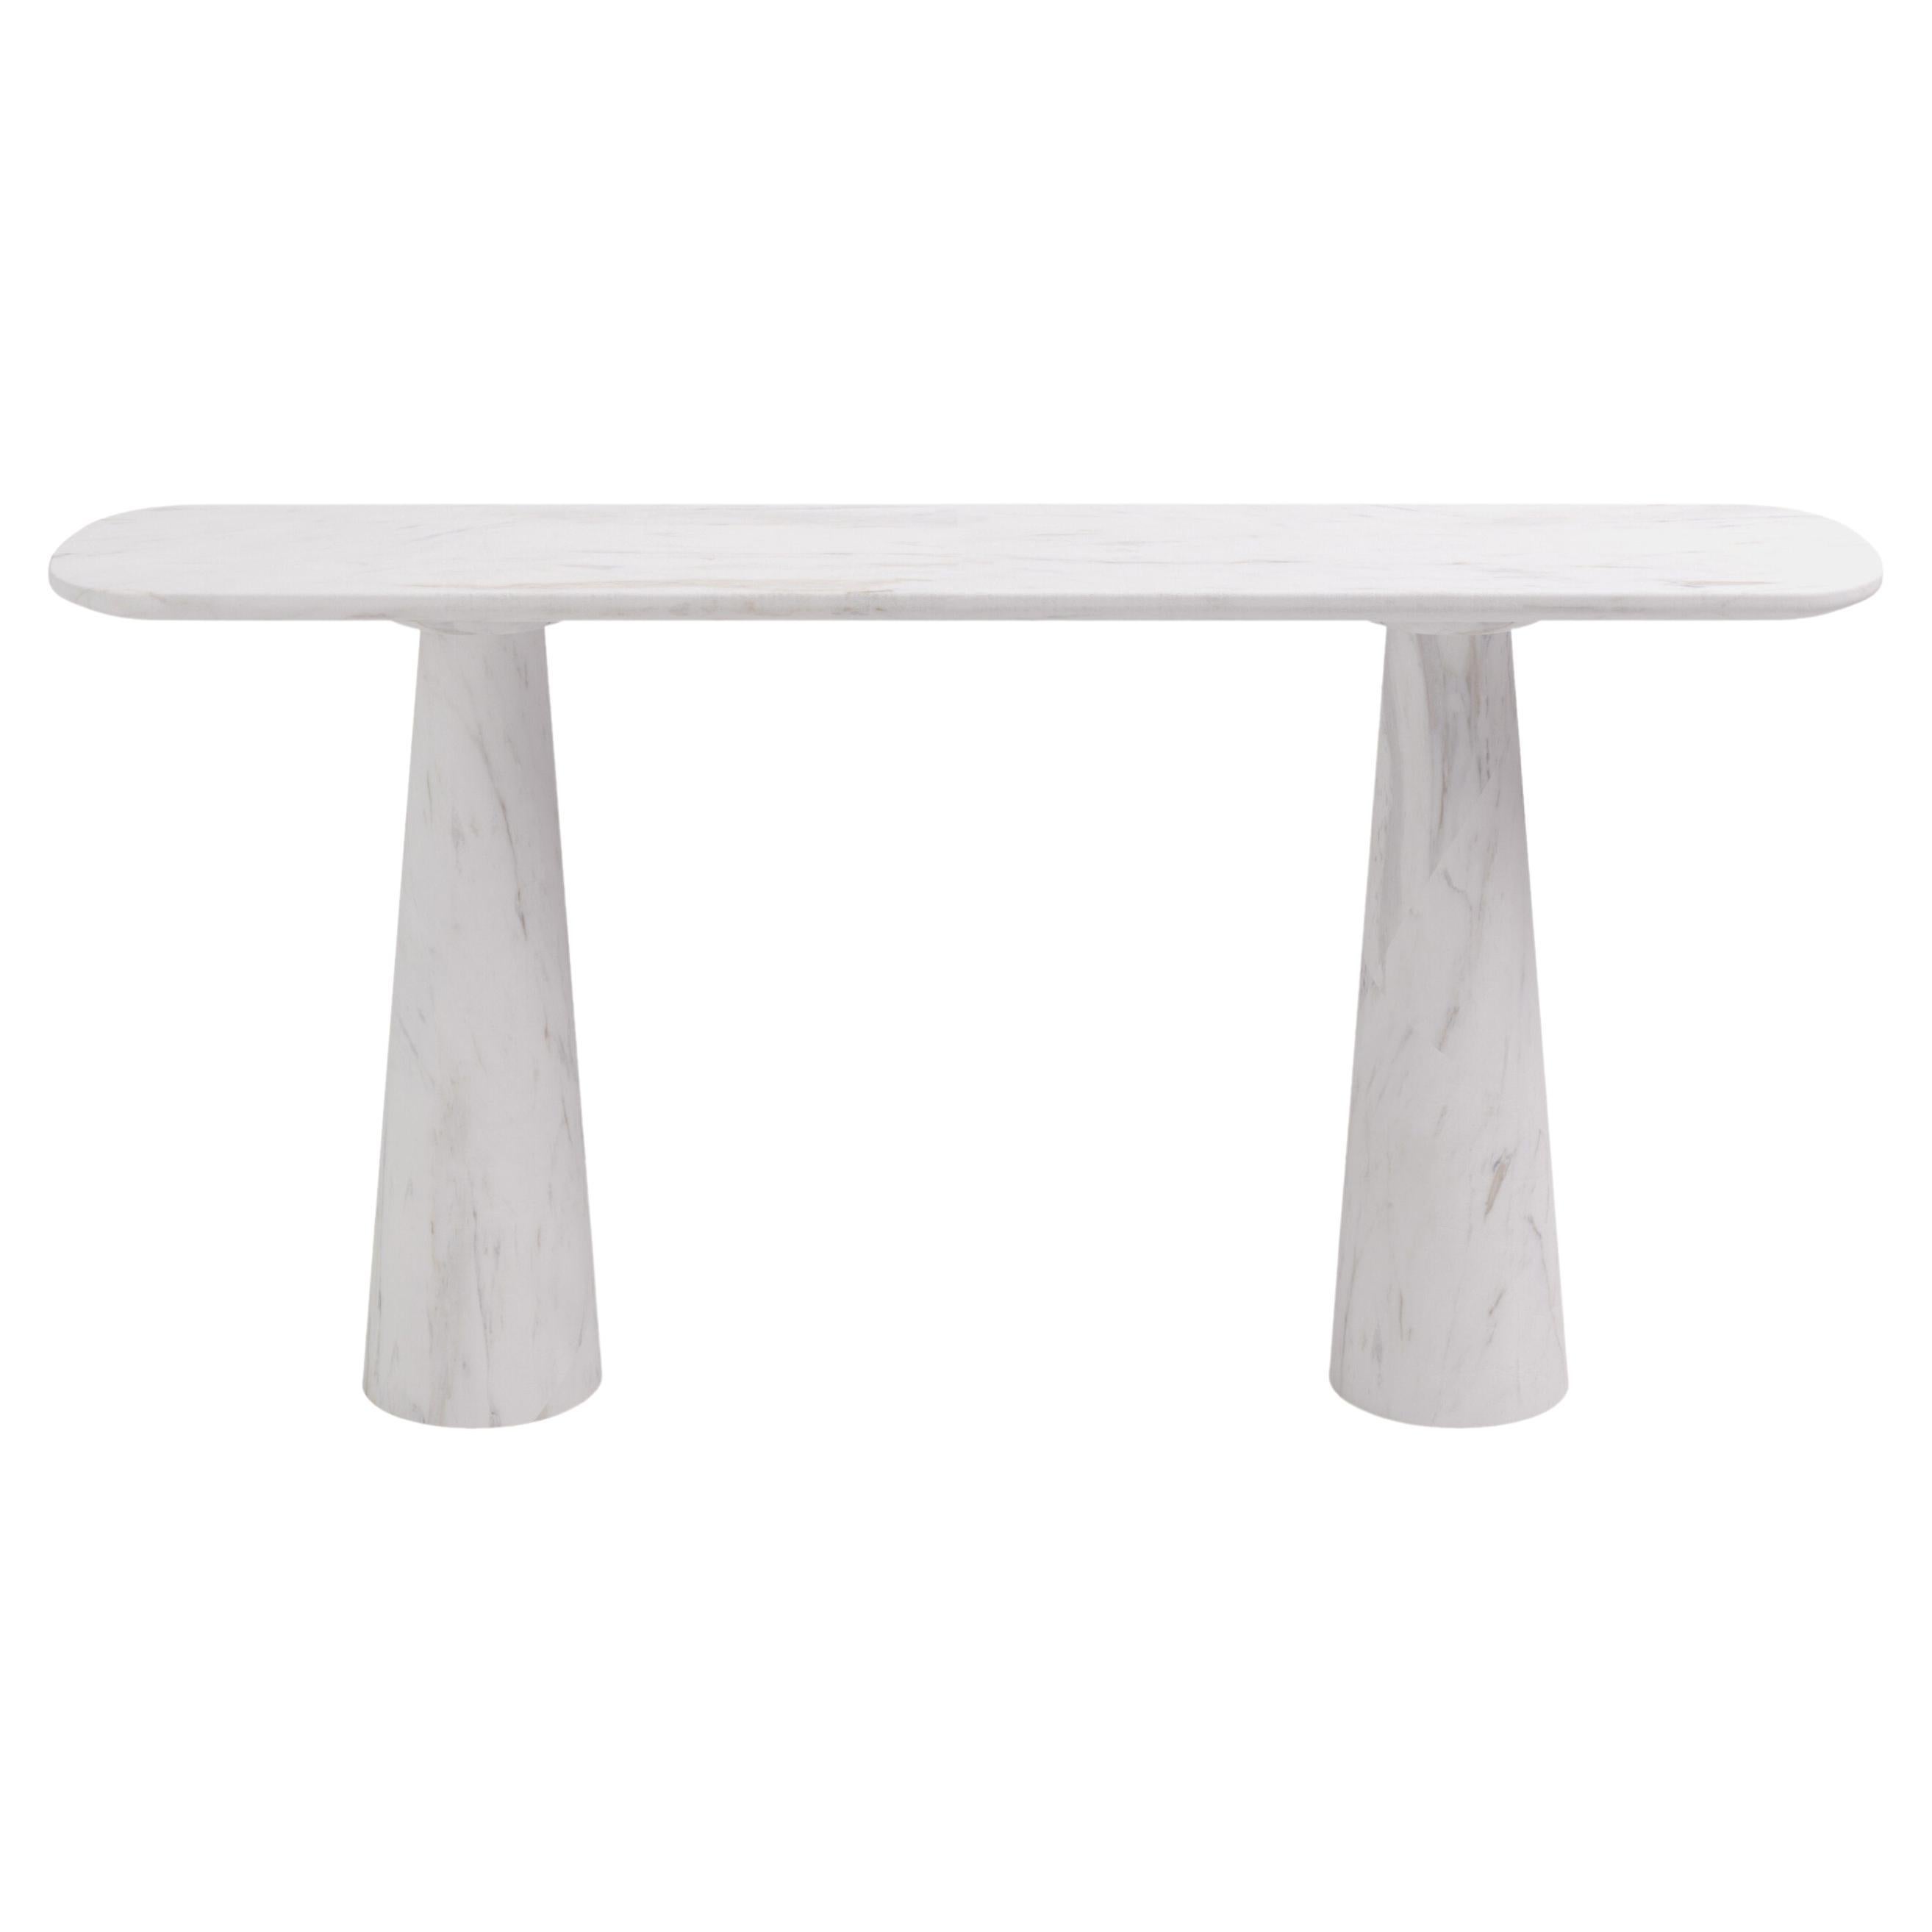 FORM(LA) Cono Console Table 72”L x 15”W x 33”H Volakas White Marble For Sale